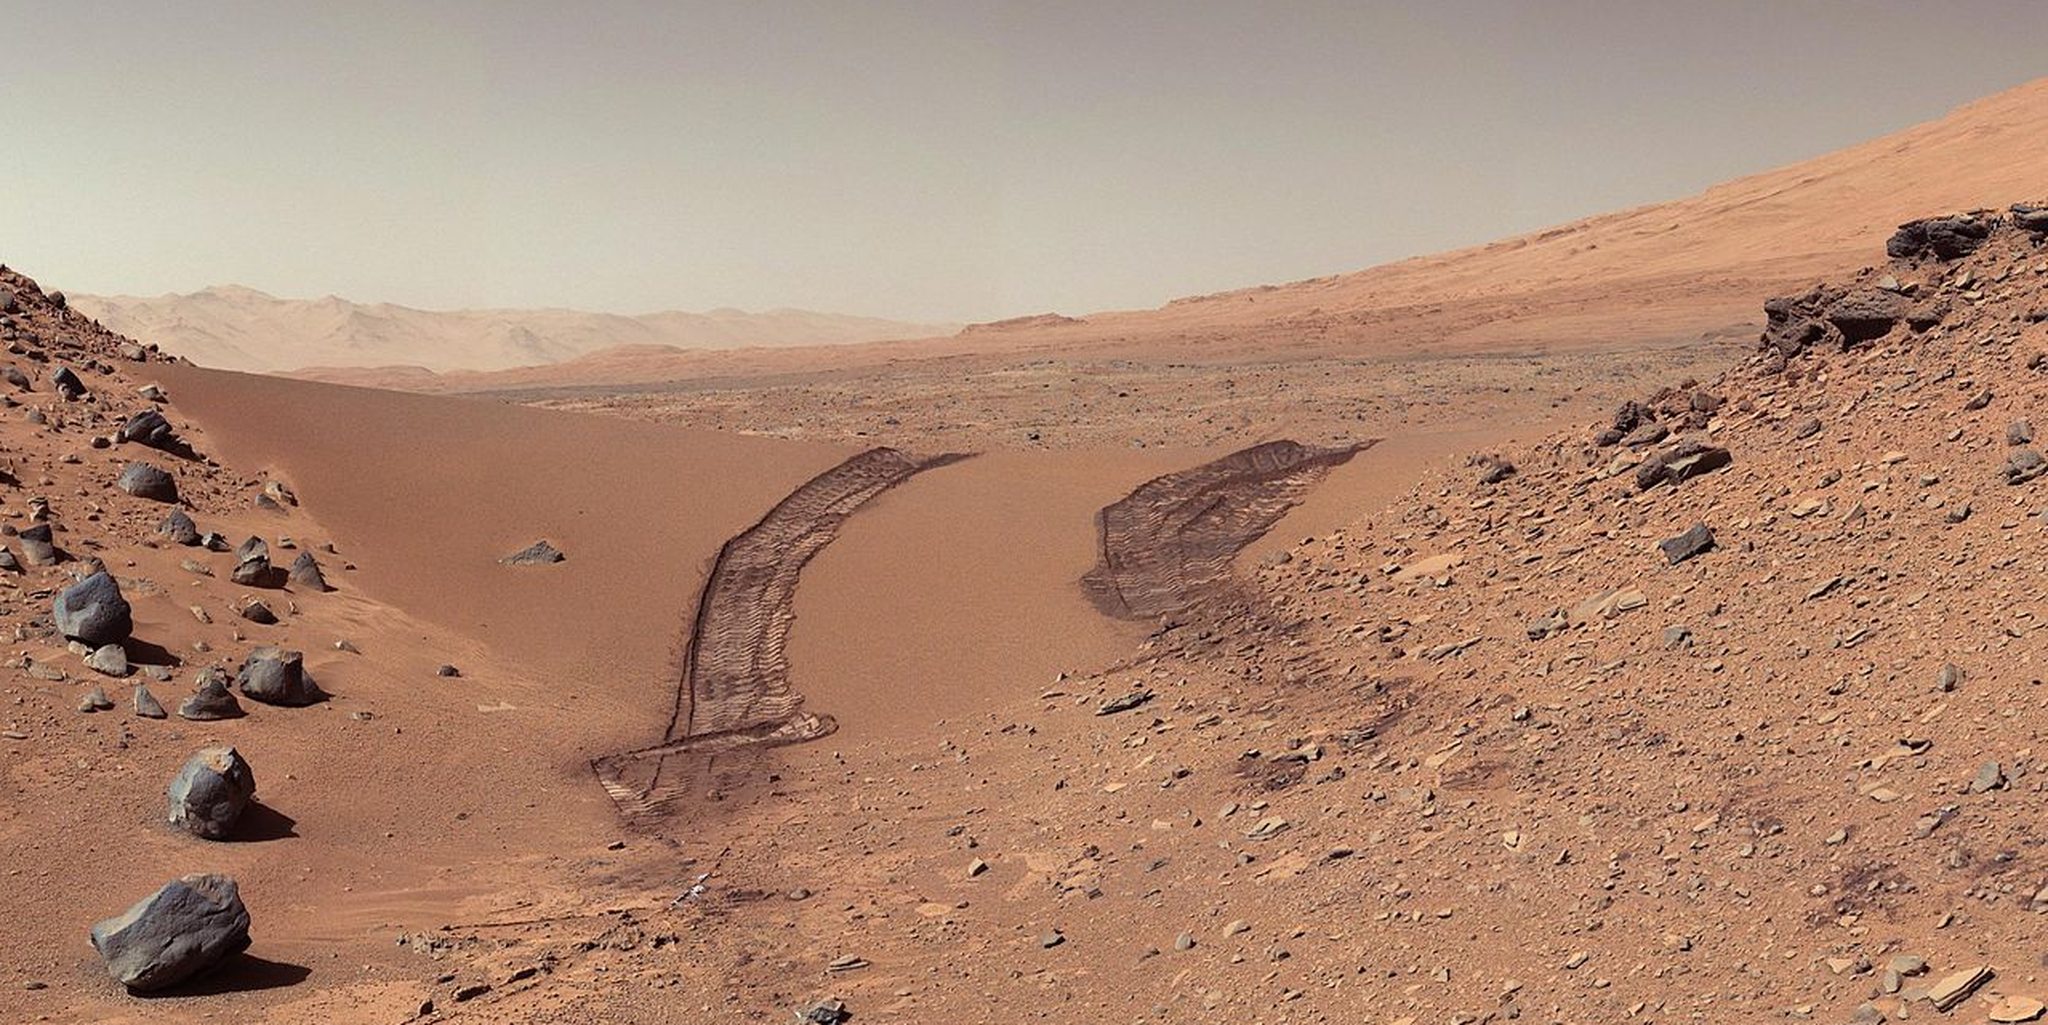 nasa公布最新照片,巨大"蜘蛛"爬过火星地面,数量众多